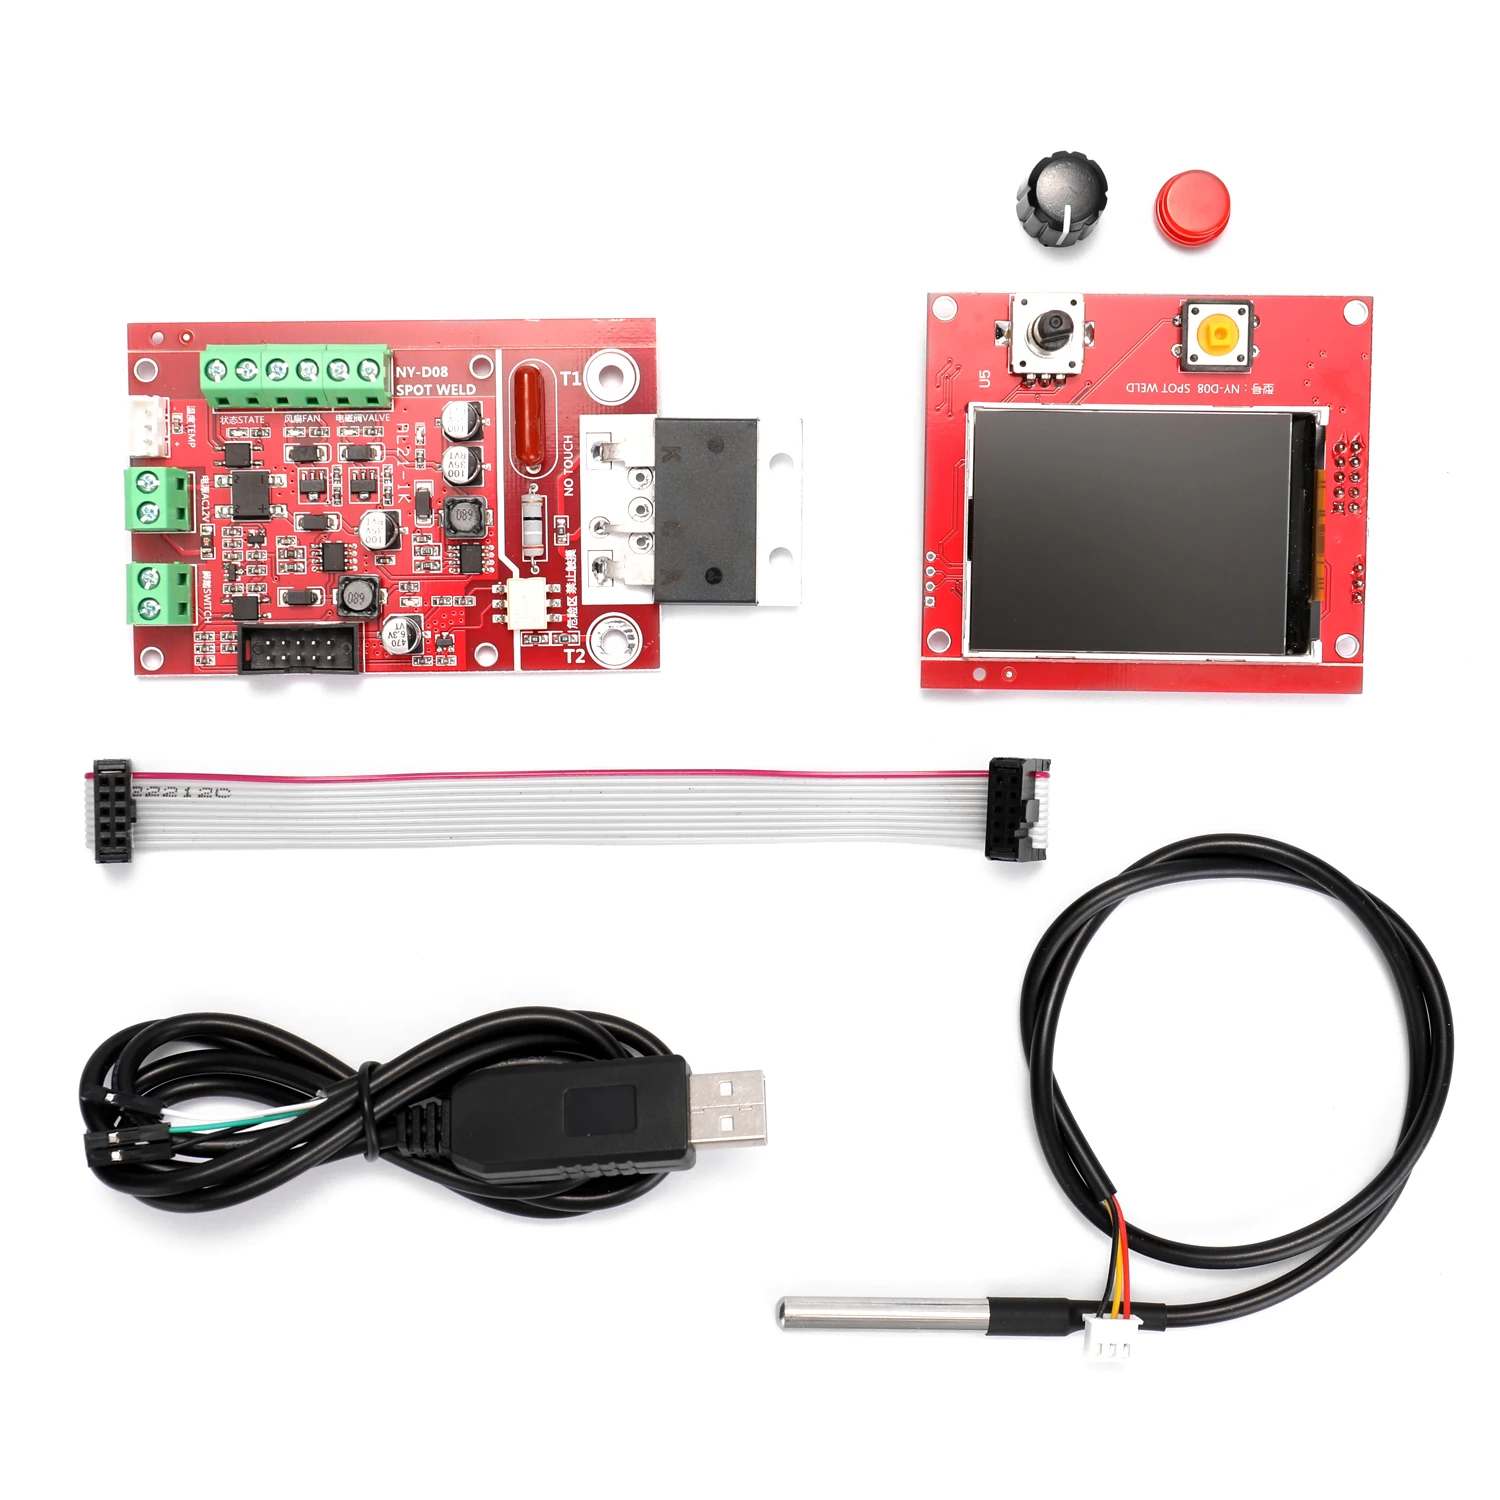 

NY-D08 контроллер аппарата для точечной сварки, пневматический цветной ЖК-дисплей, Персонализация с многоточечным датчиком температуры